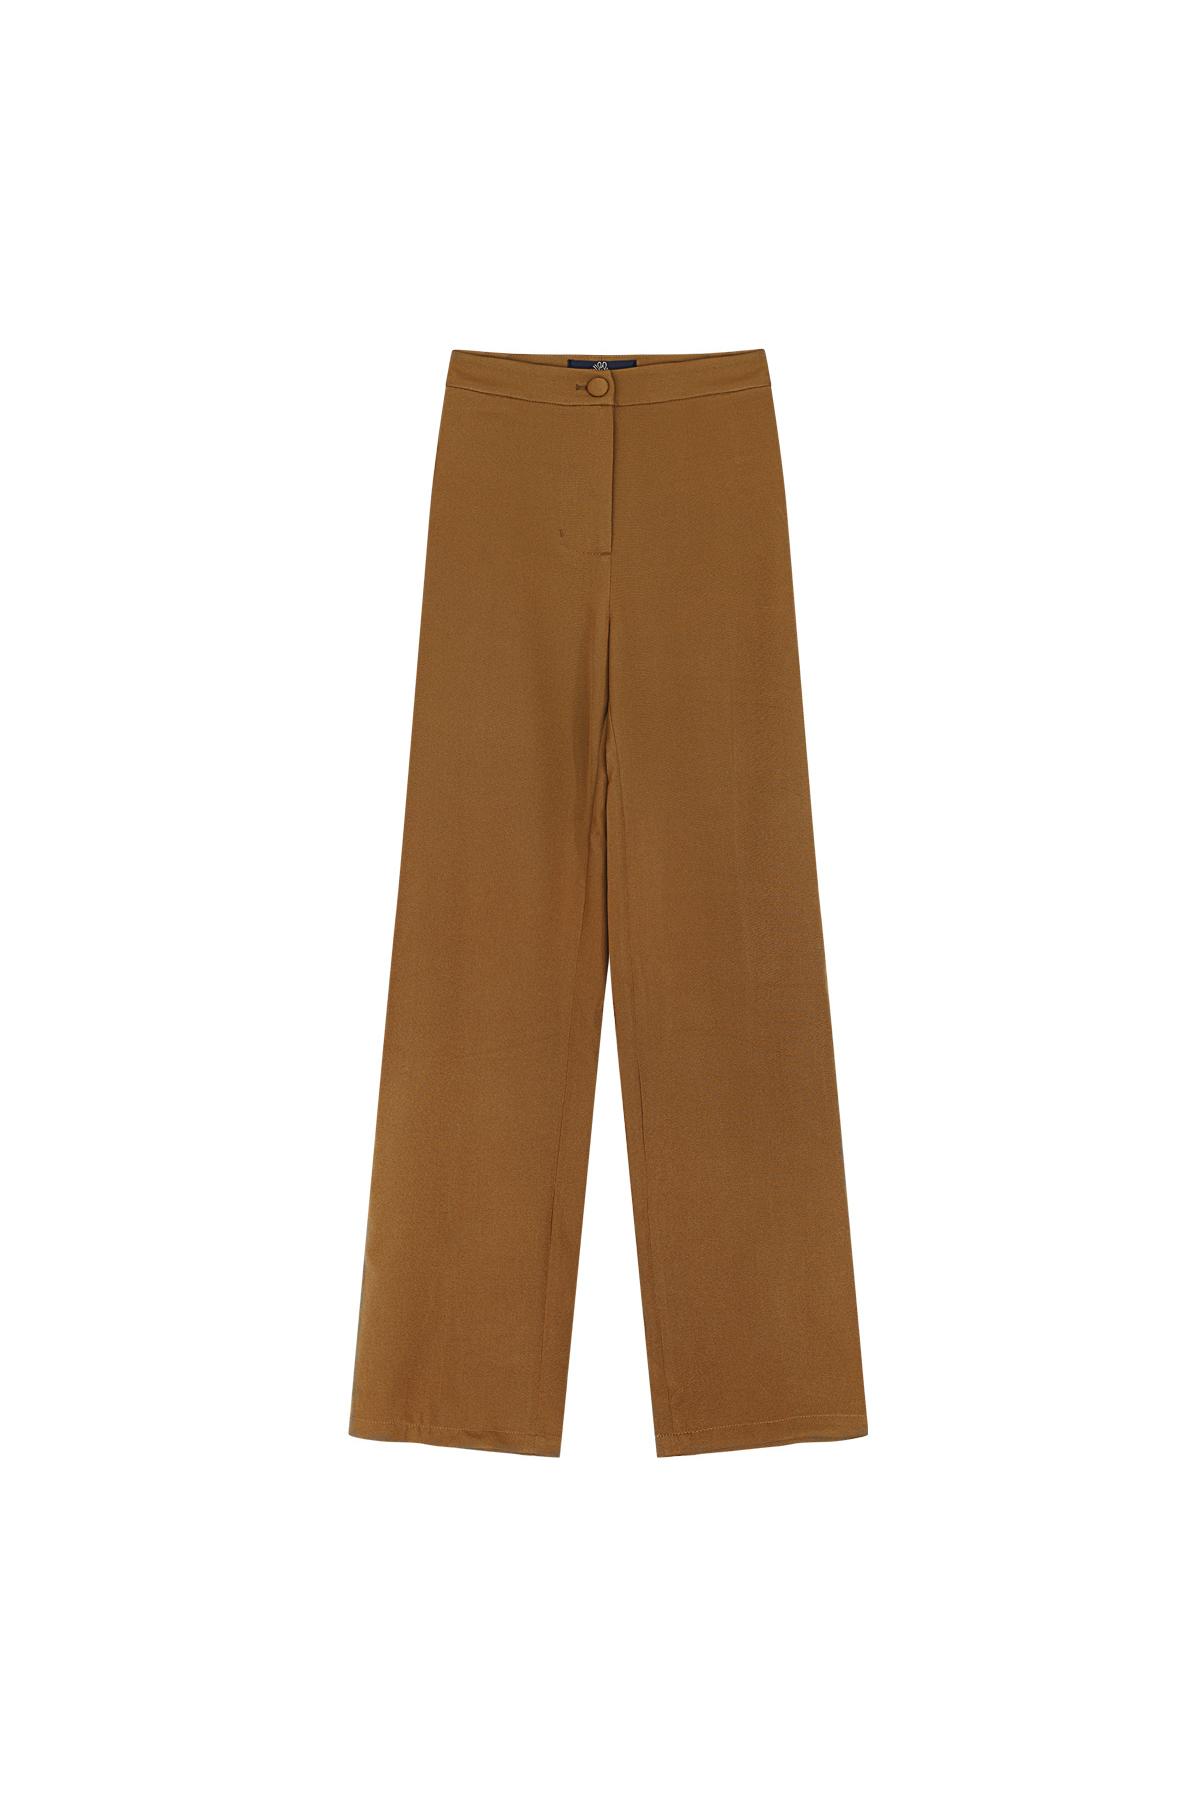 Pantalones básicos - Imprescindibles para las vacaciones Beige S